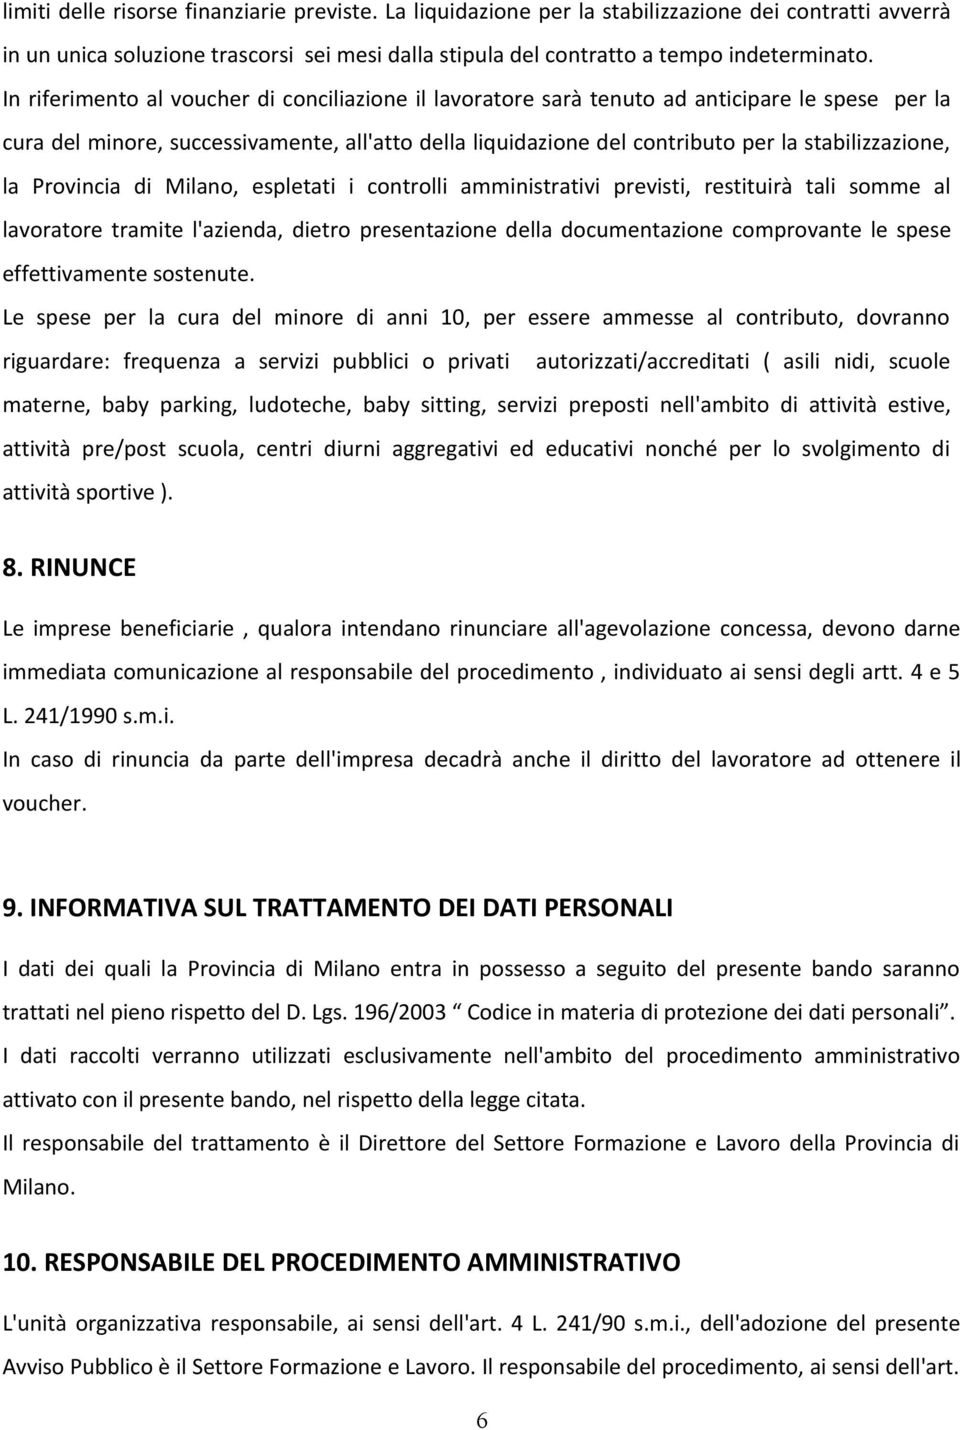 la Provincia di Milano, espletati i controlli amministrativi previsti, restituirà tali somme al lavoratore tramite l'azienda, dietro presentazione della documentazione comprovante le spese